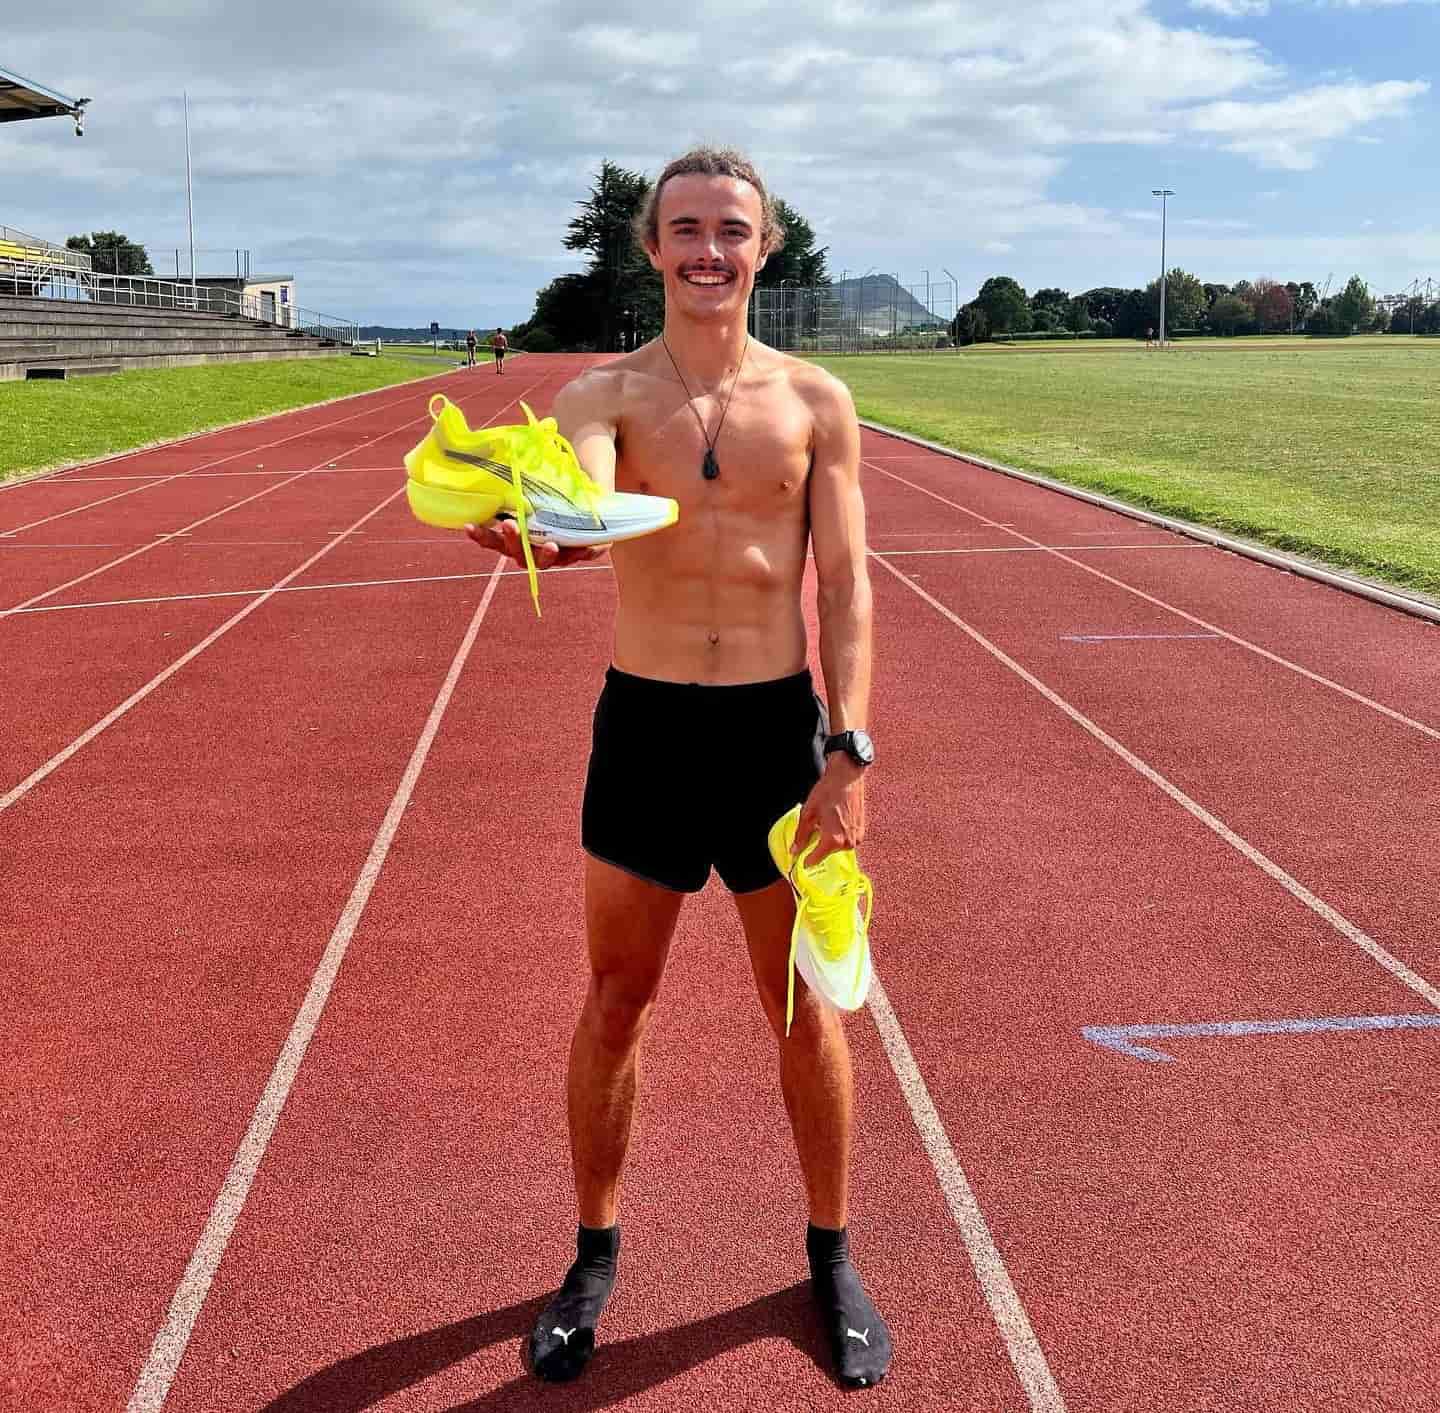 Un homme torse nue sur une piste d’athlétisme avec ses chaussures de running PUMA jaunes dans ses mains